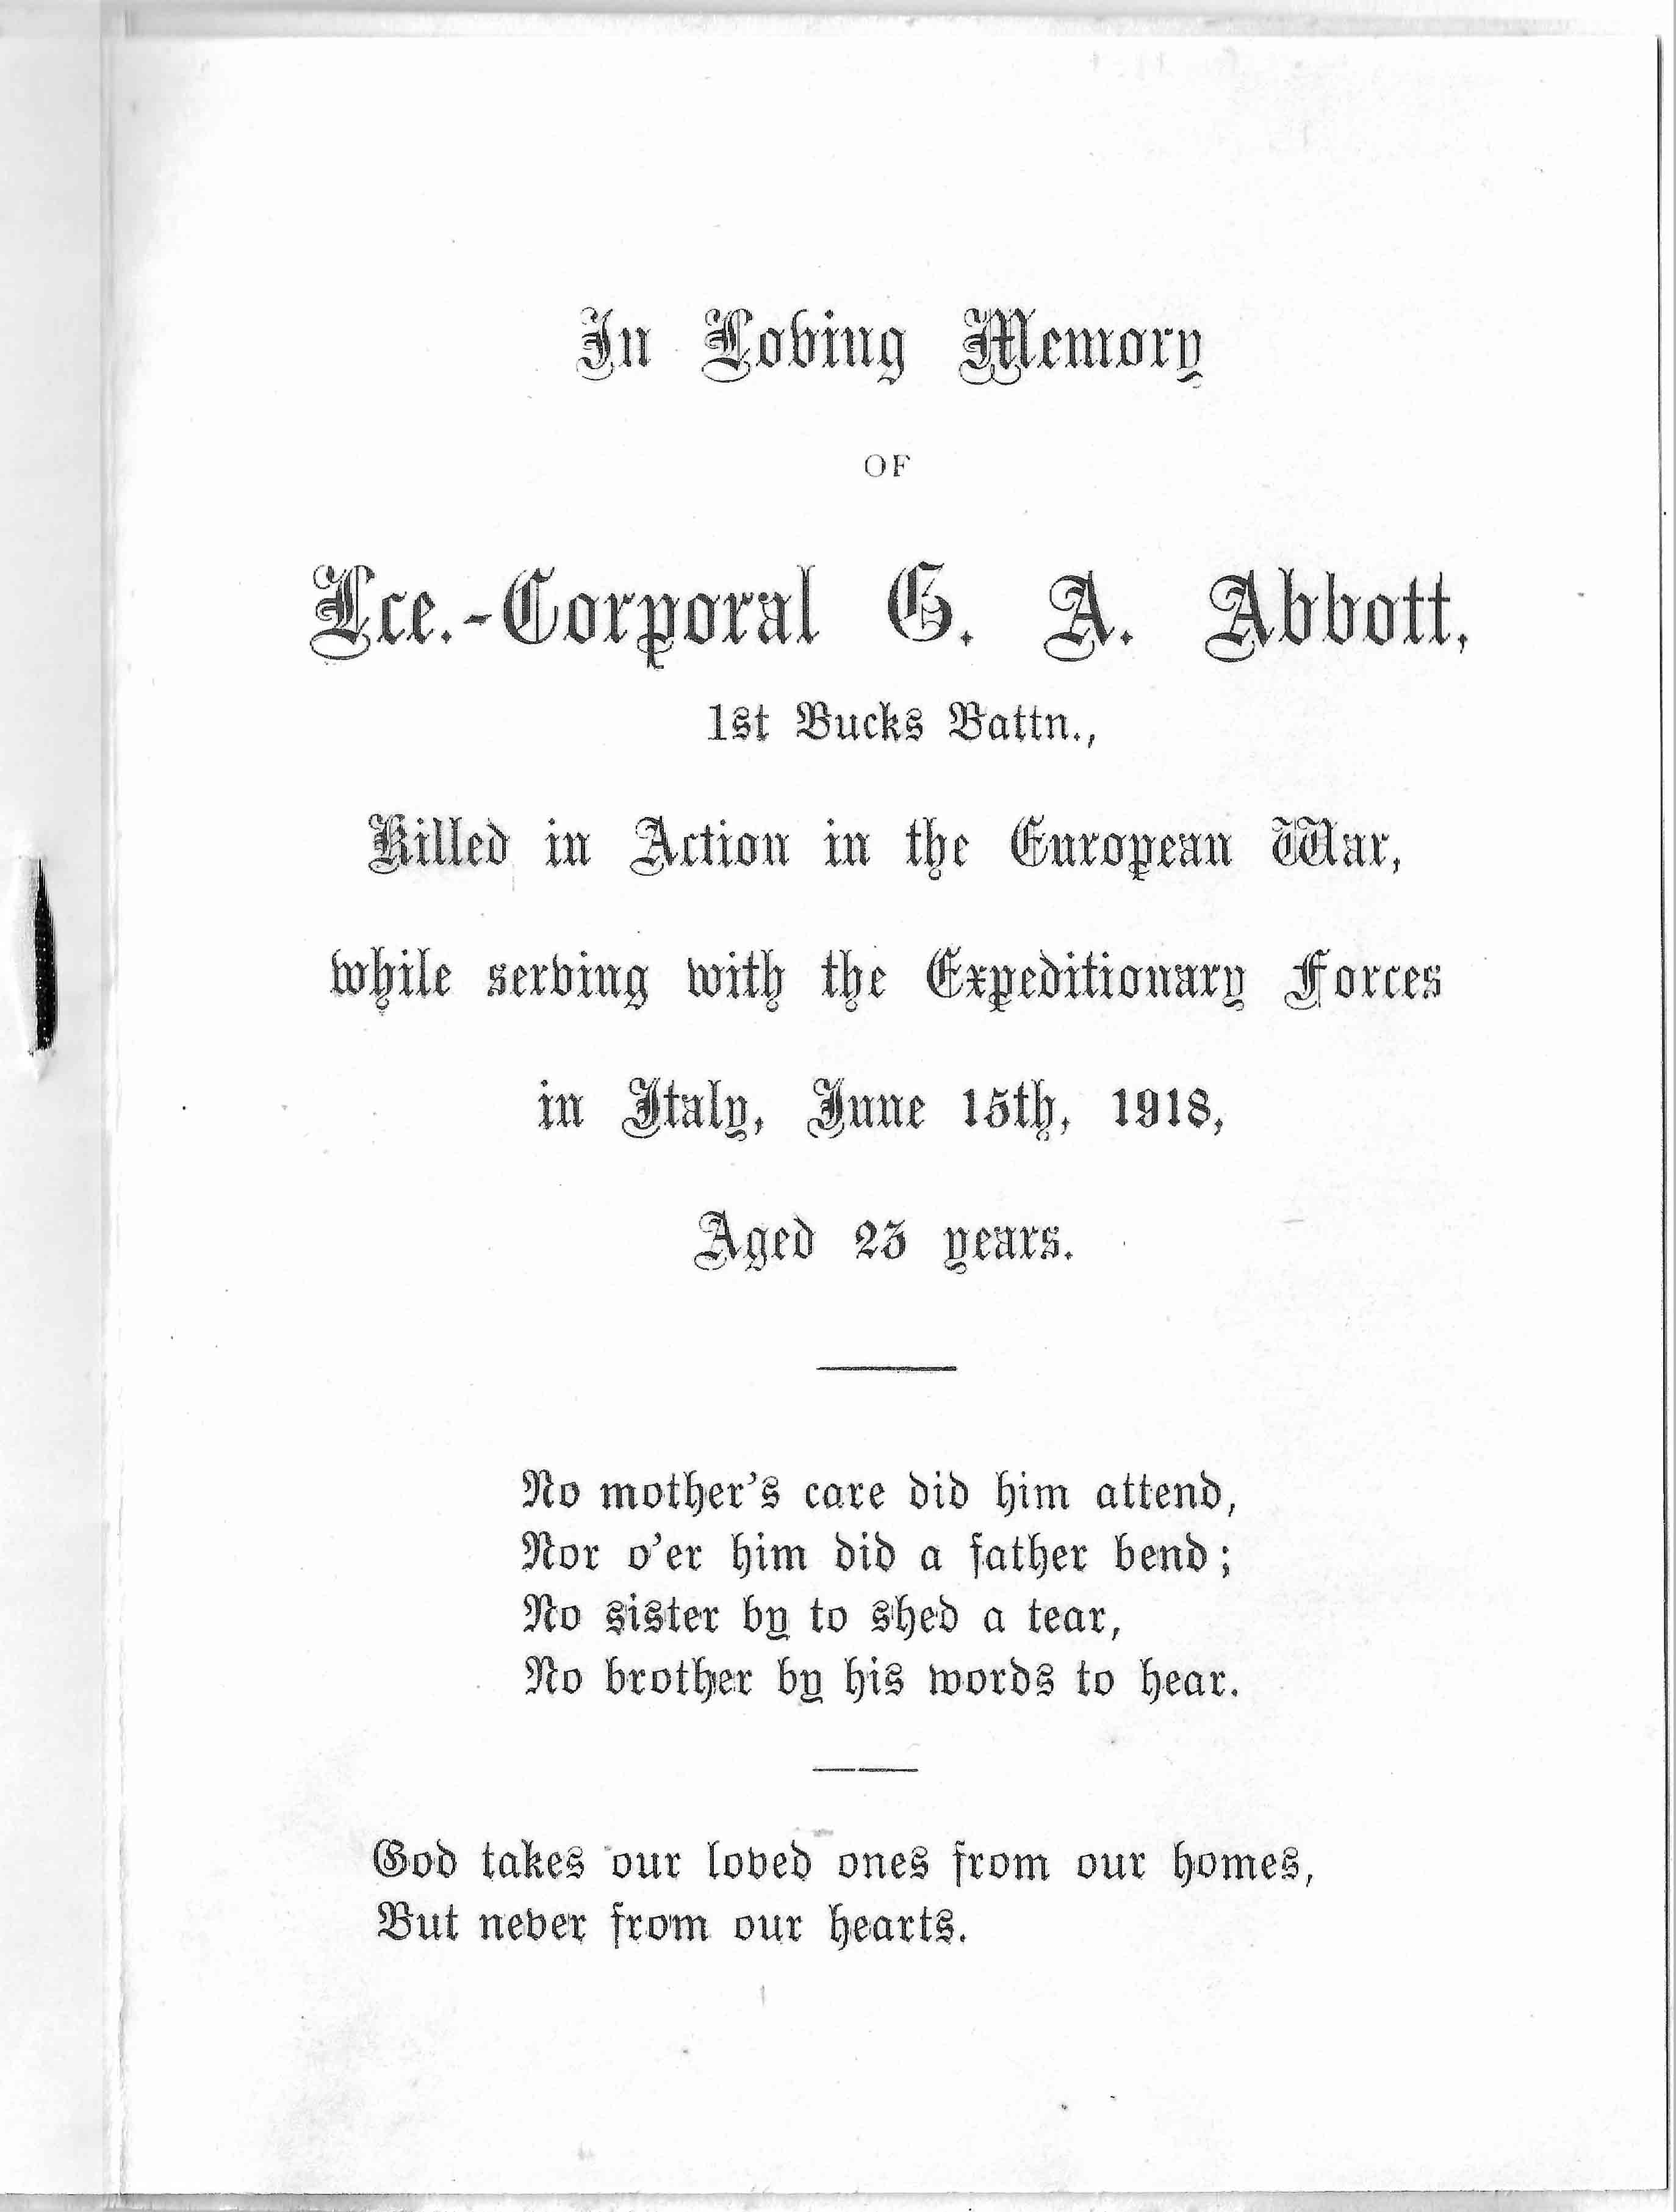 Abbott, George in Memorium p2